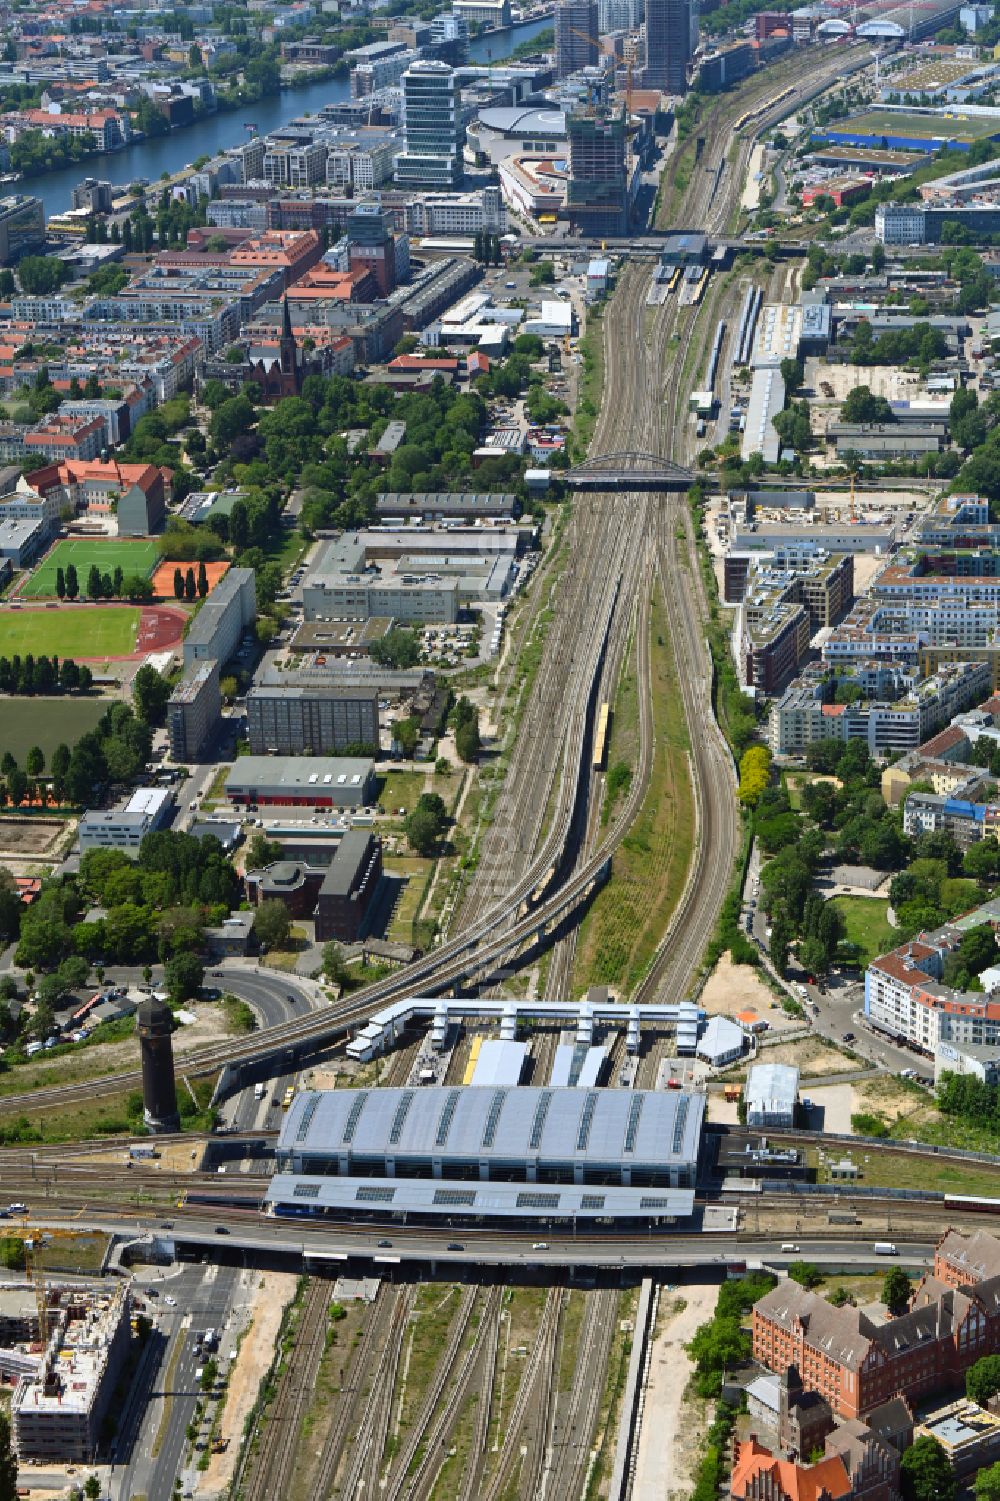 Luftbild Berlin - Bahnhof Ostkreuz im Stadtteil Friedrichshain von Berlin